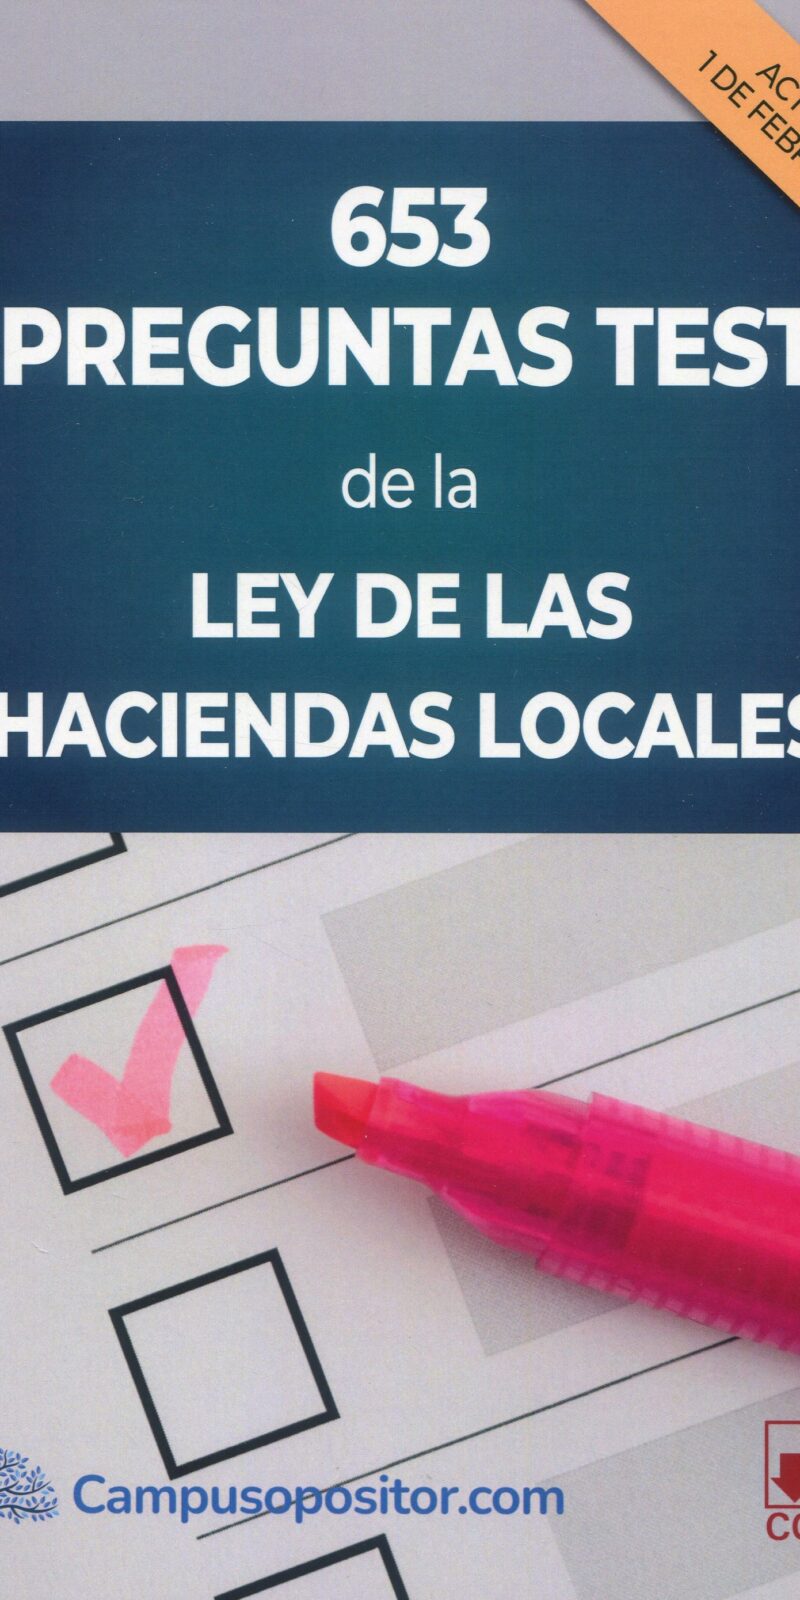 653 Preguntas test de Ley de Haciendas Locales 9788413598079